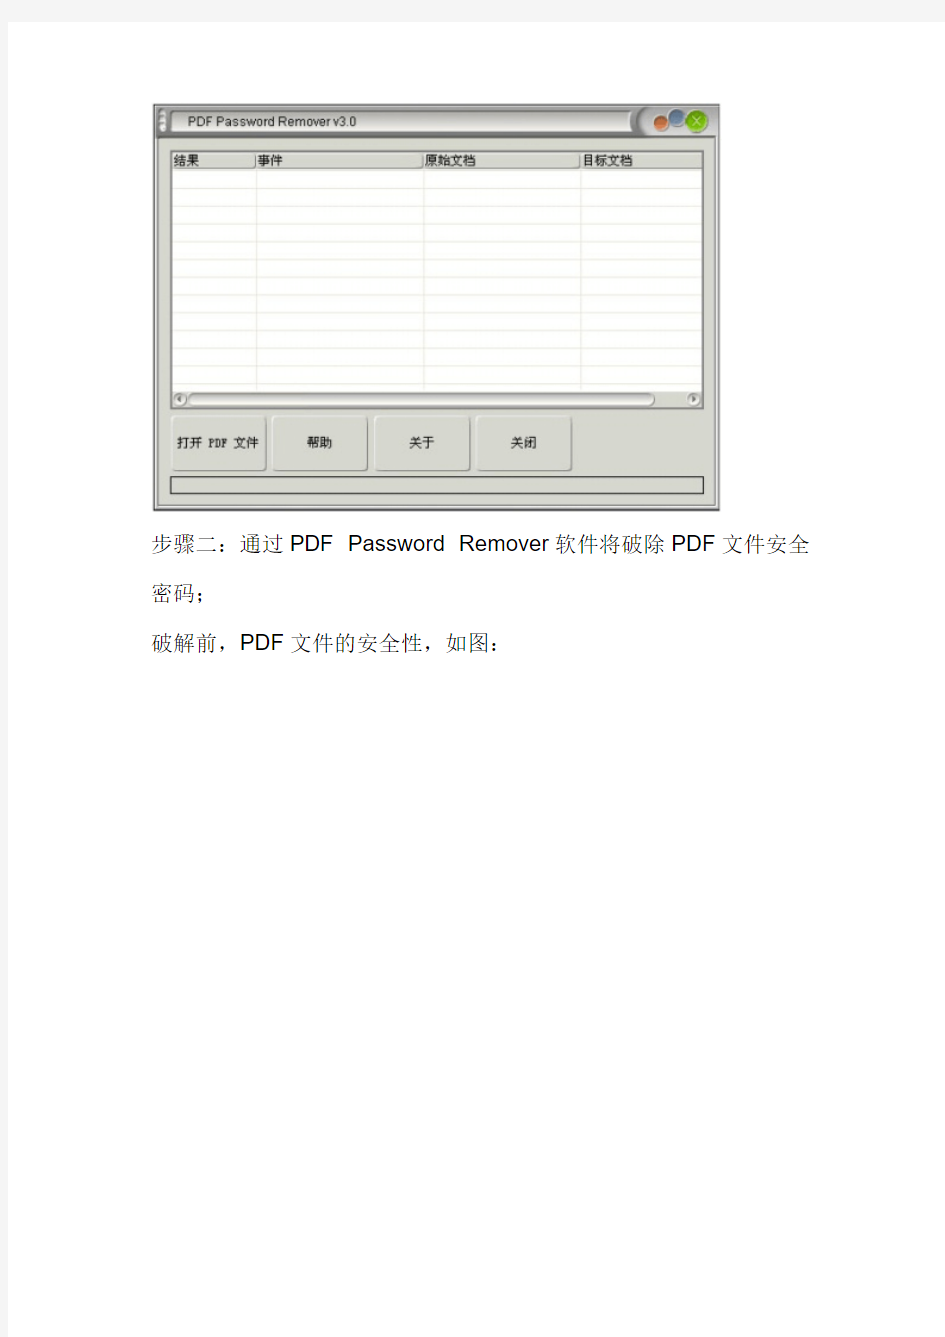 有关如何破解PDF加密文件的教程